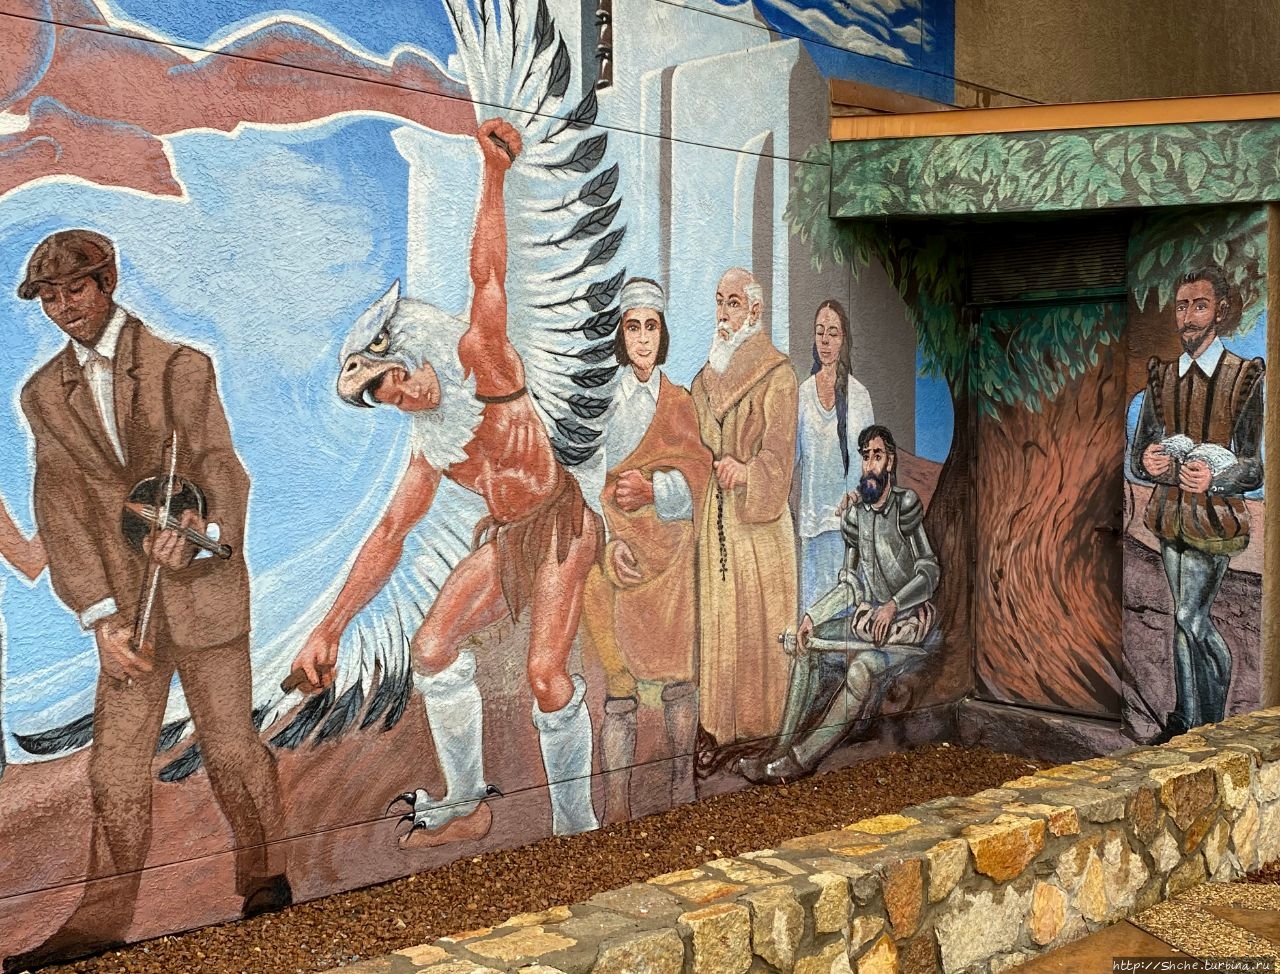 Чамизал Национальный Мемориал Эль-Пасо, CША